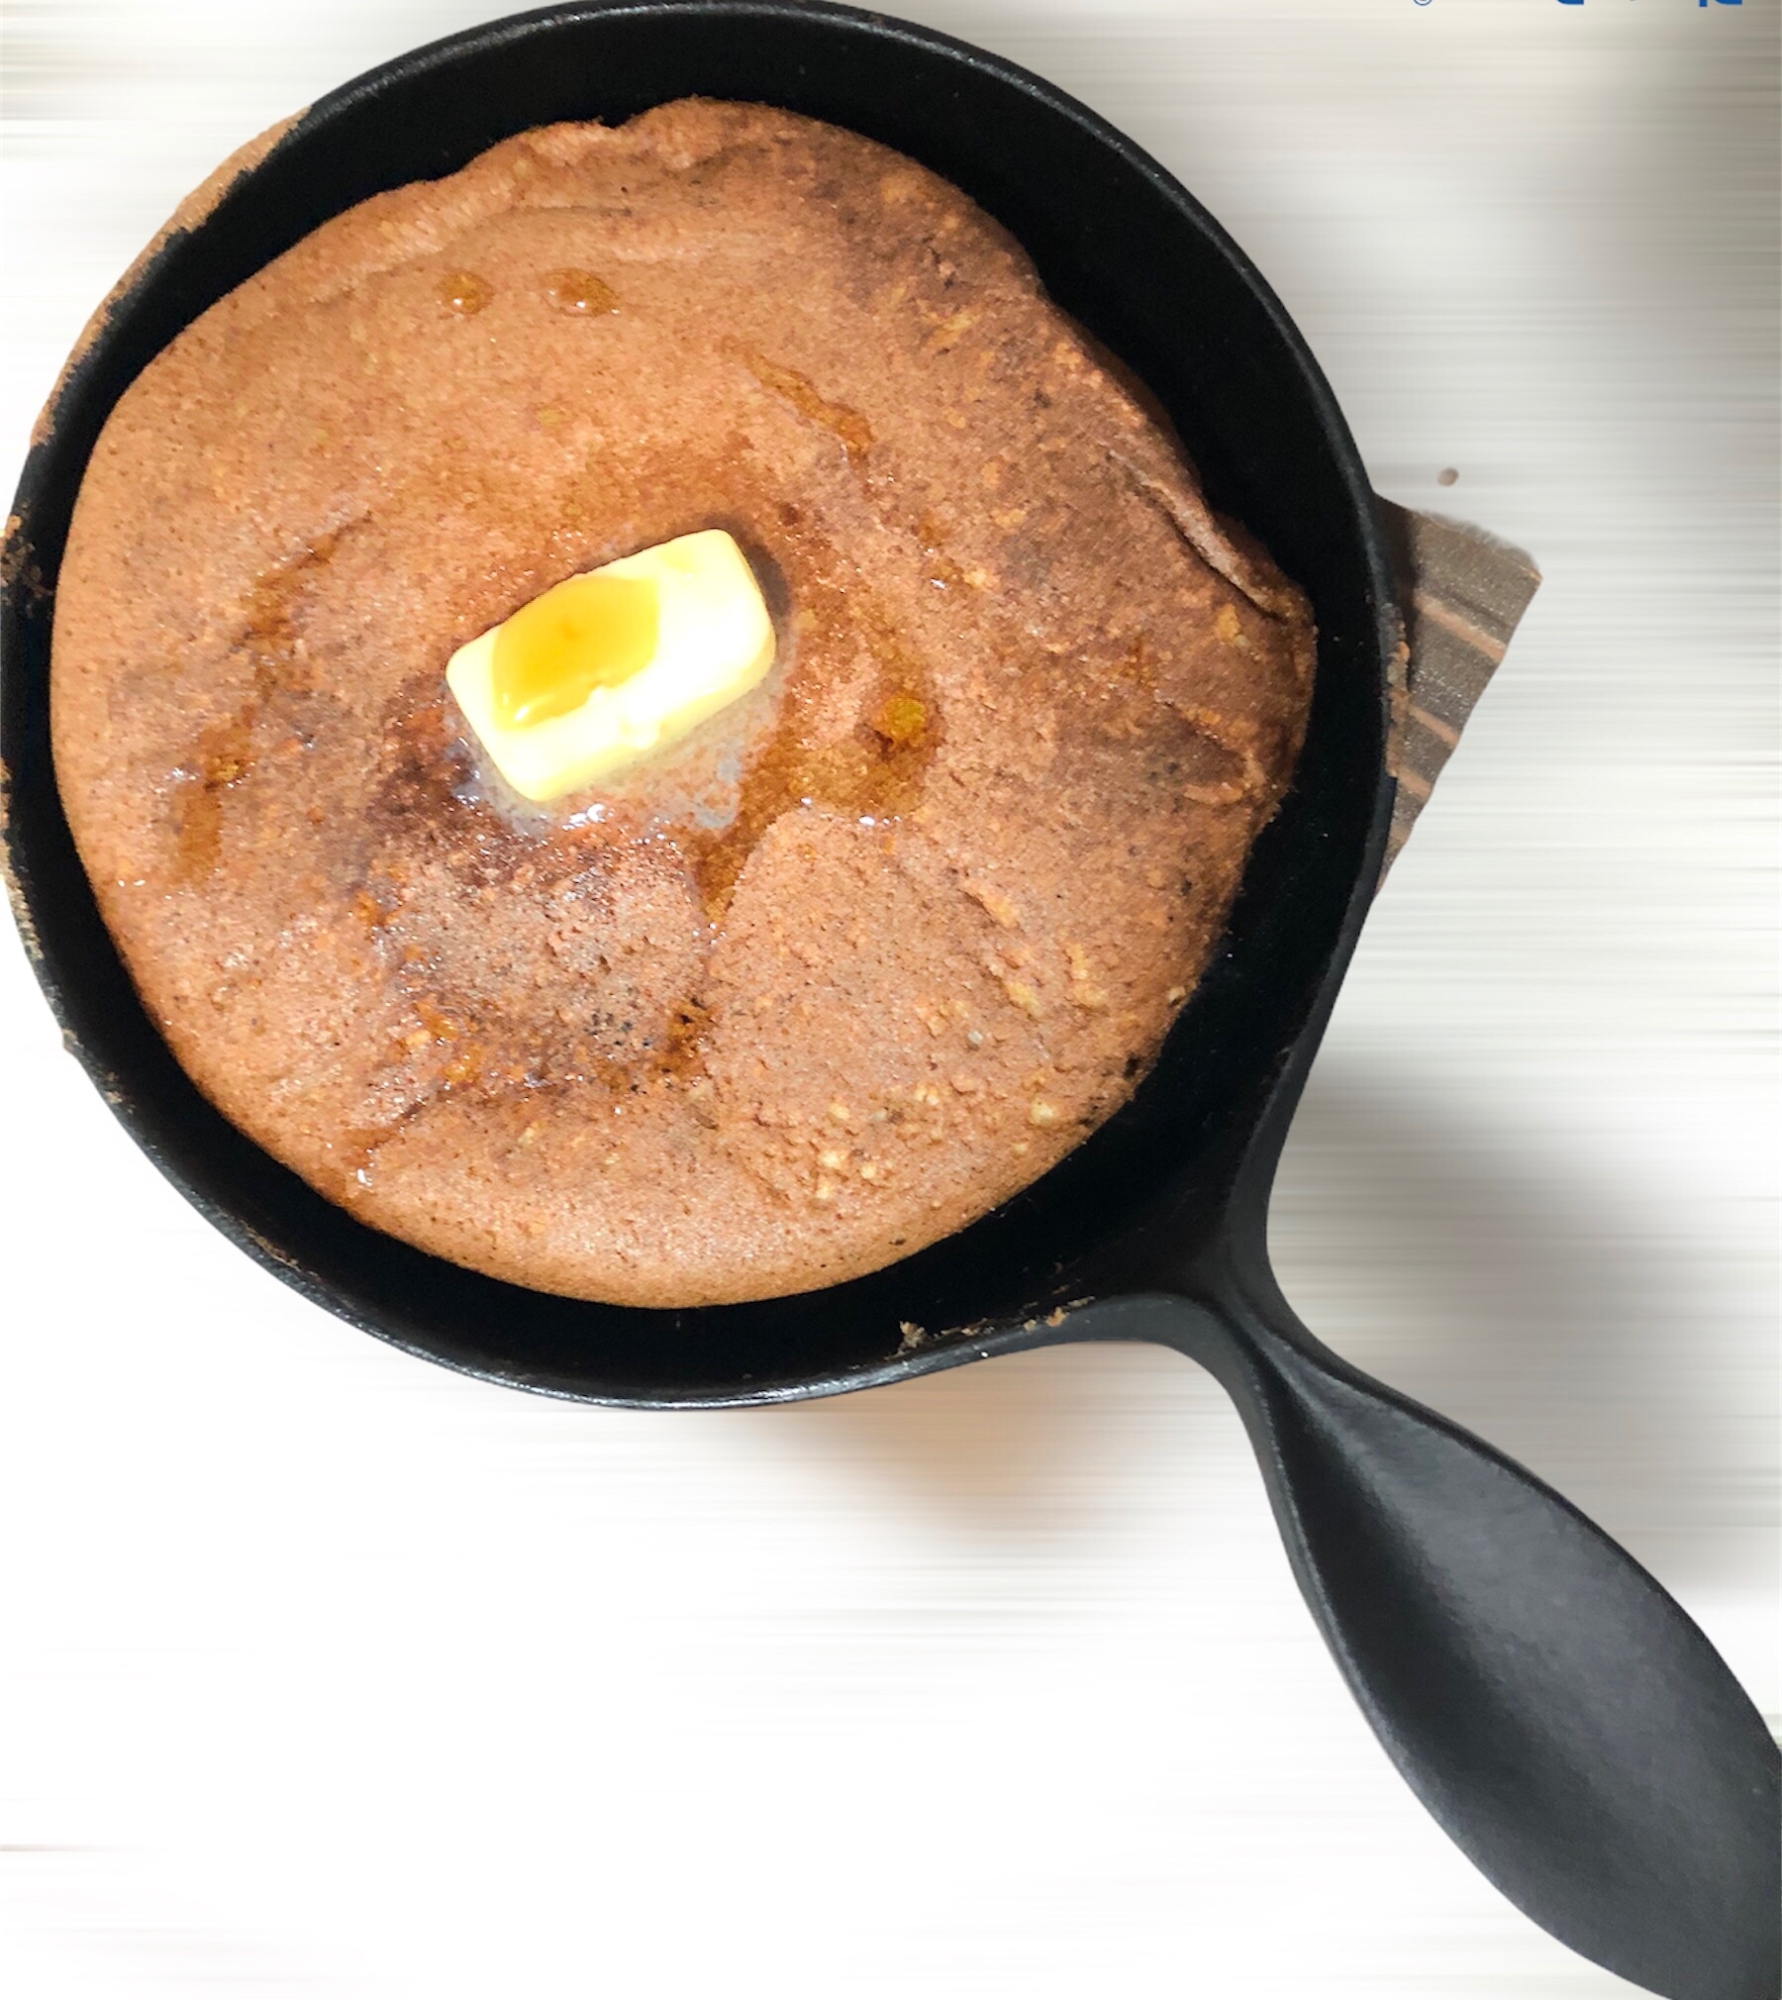 メレンゲと蕎麦粉で作る低カロリーフワフワパンケーキ